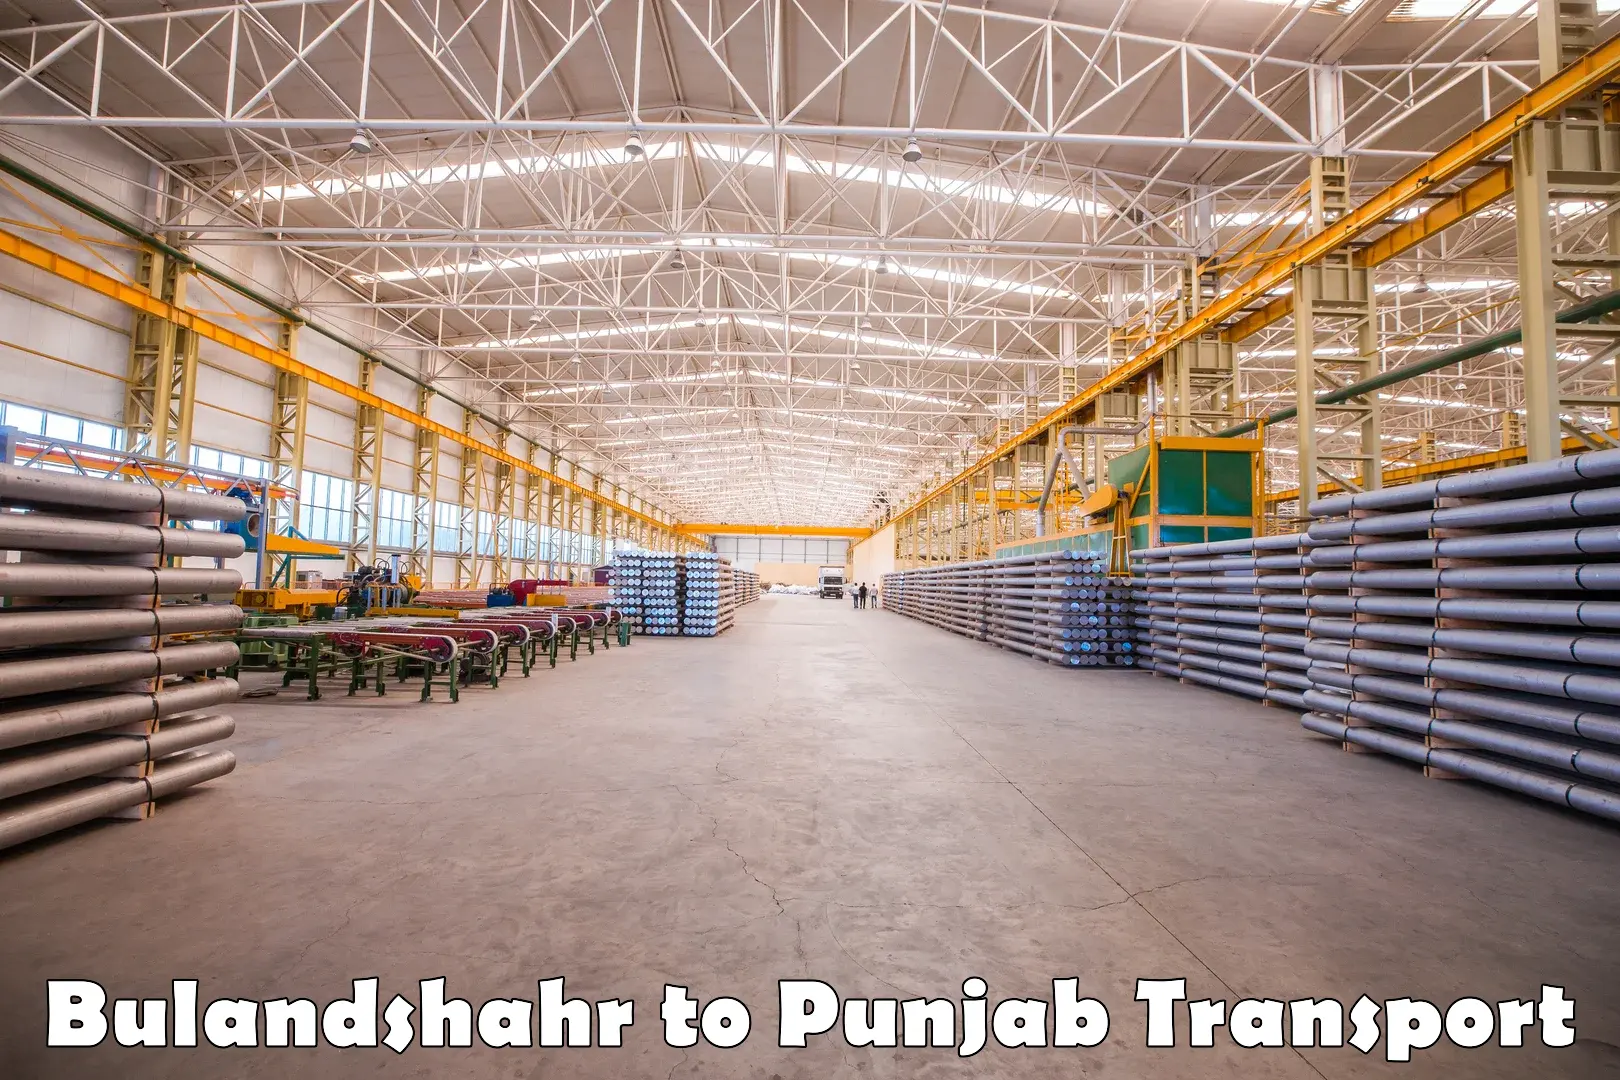 Daily transport service Bulandshahr to Sirhind Fatehgarh